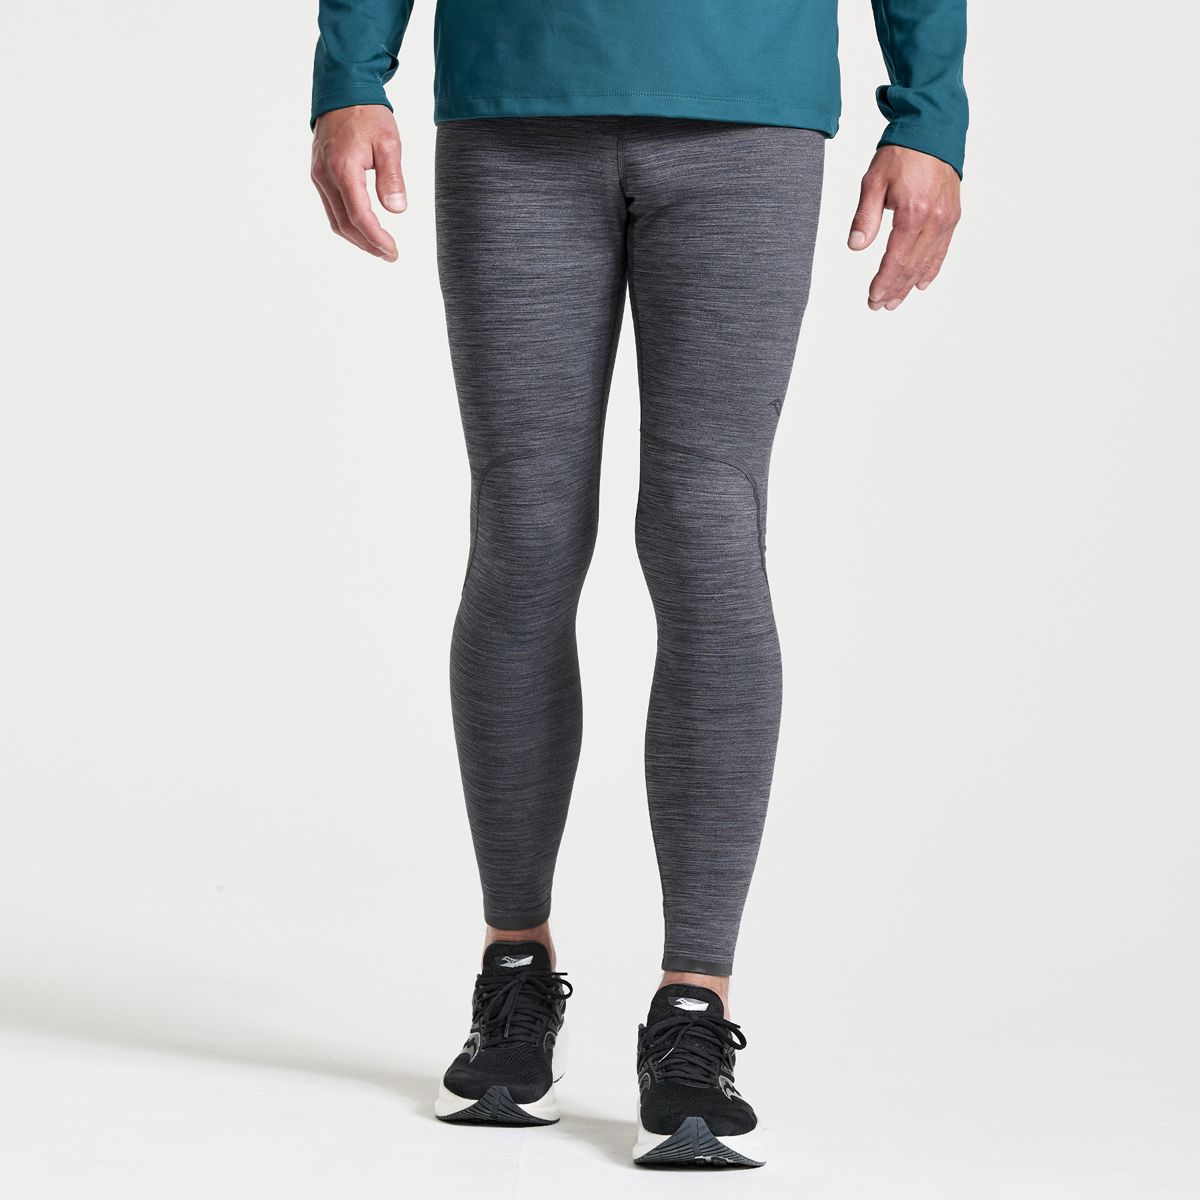 Nike Grey Tight Sweatpants